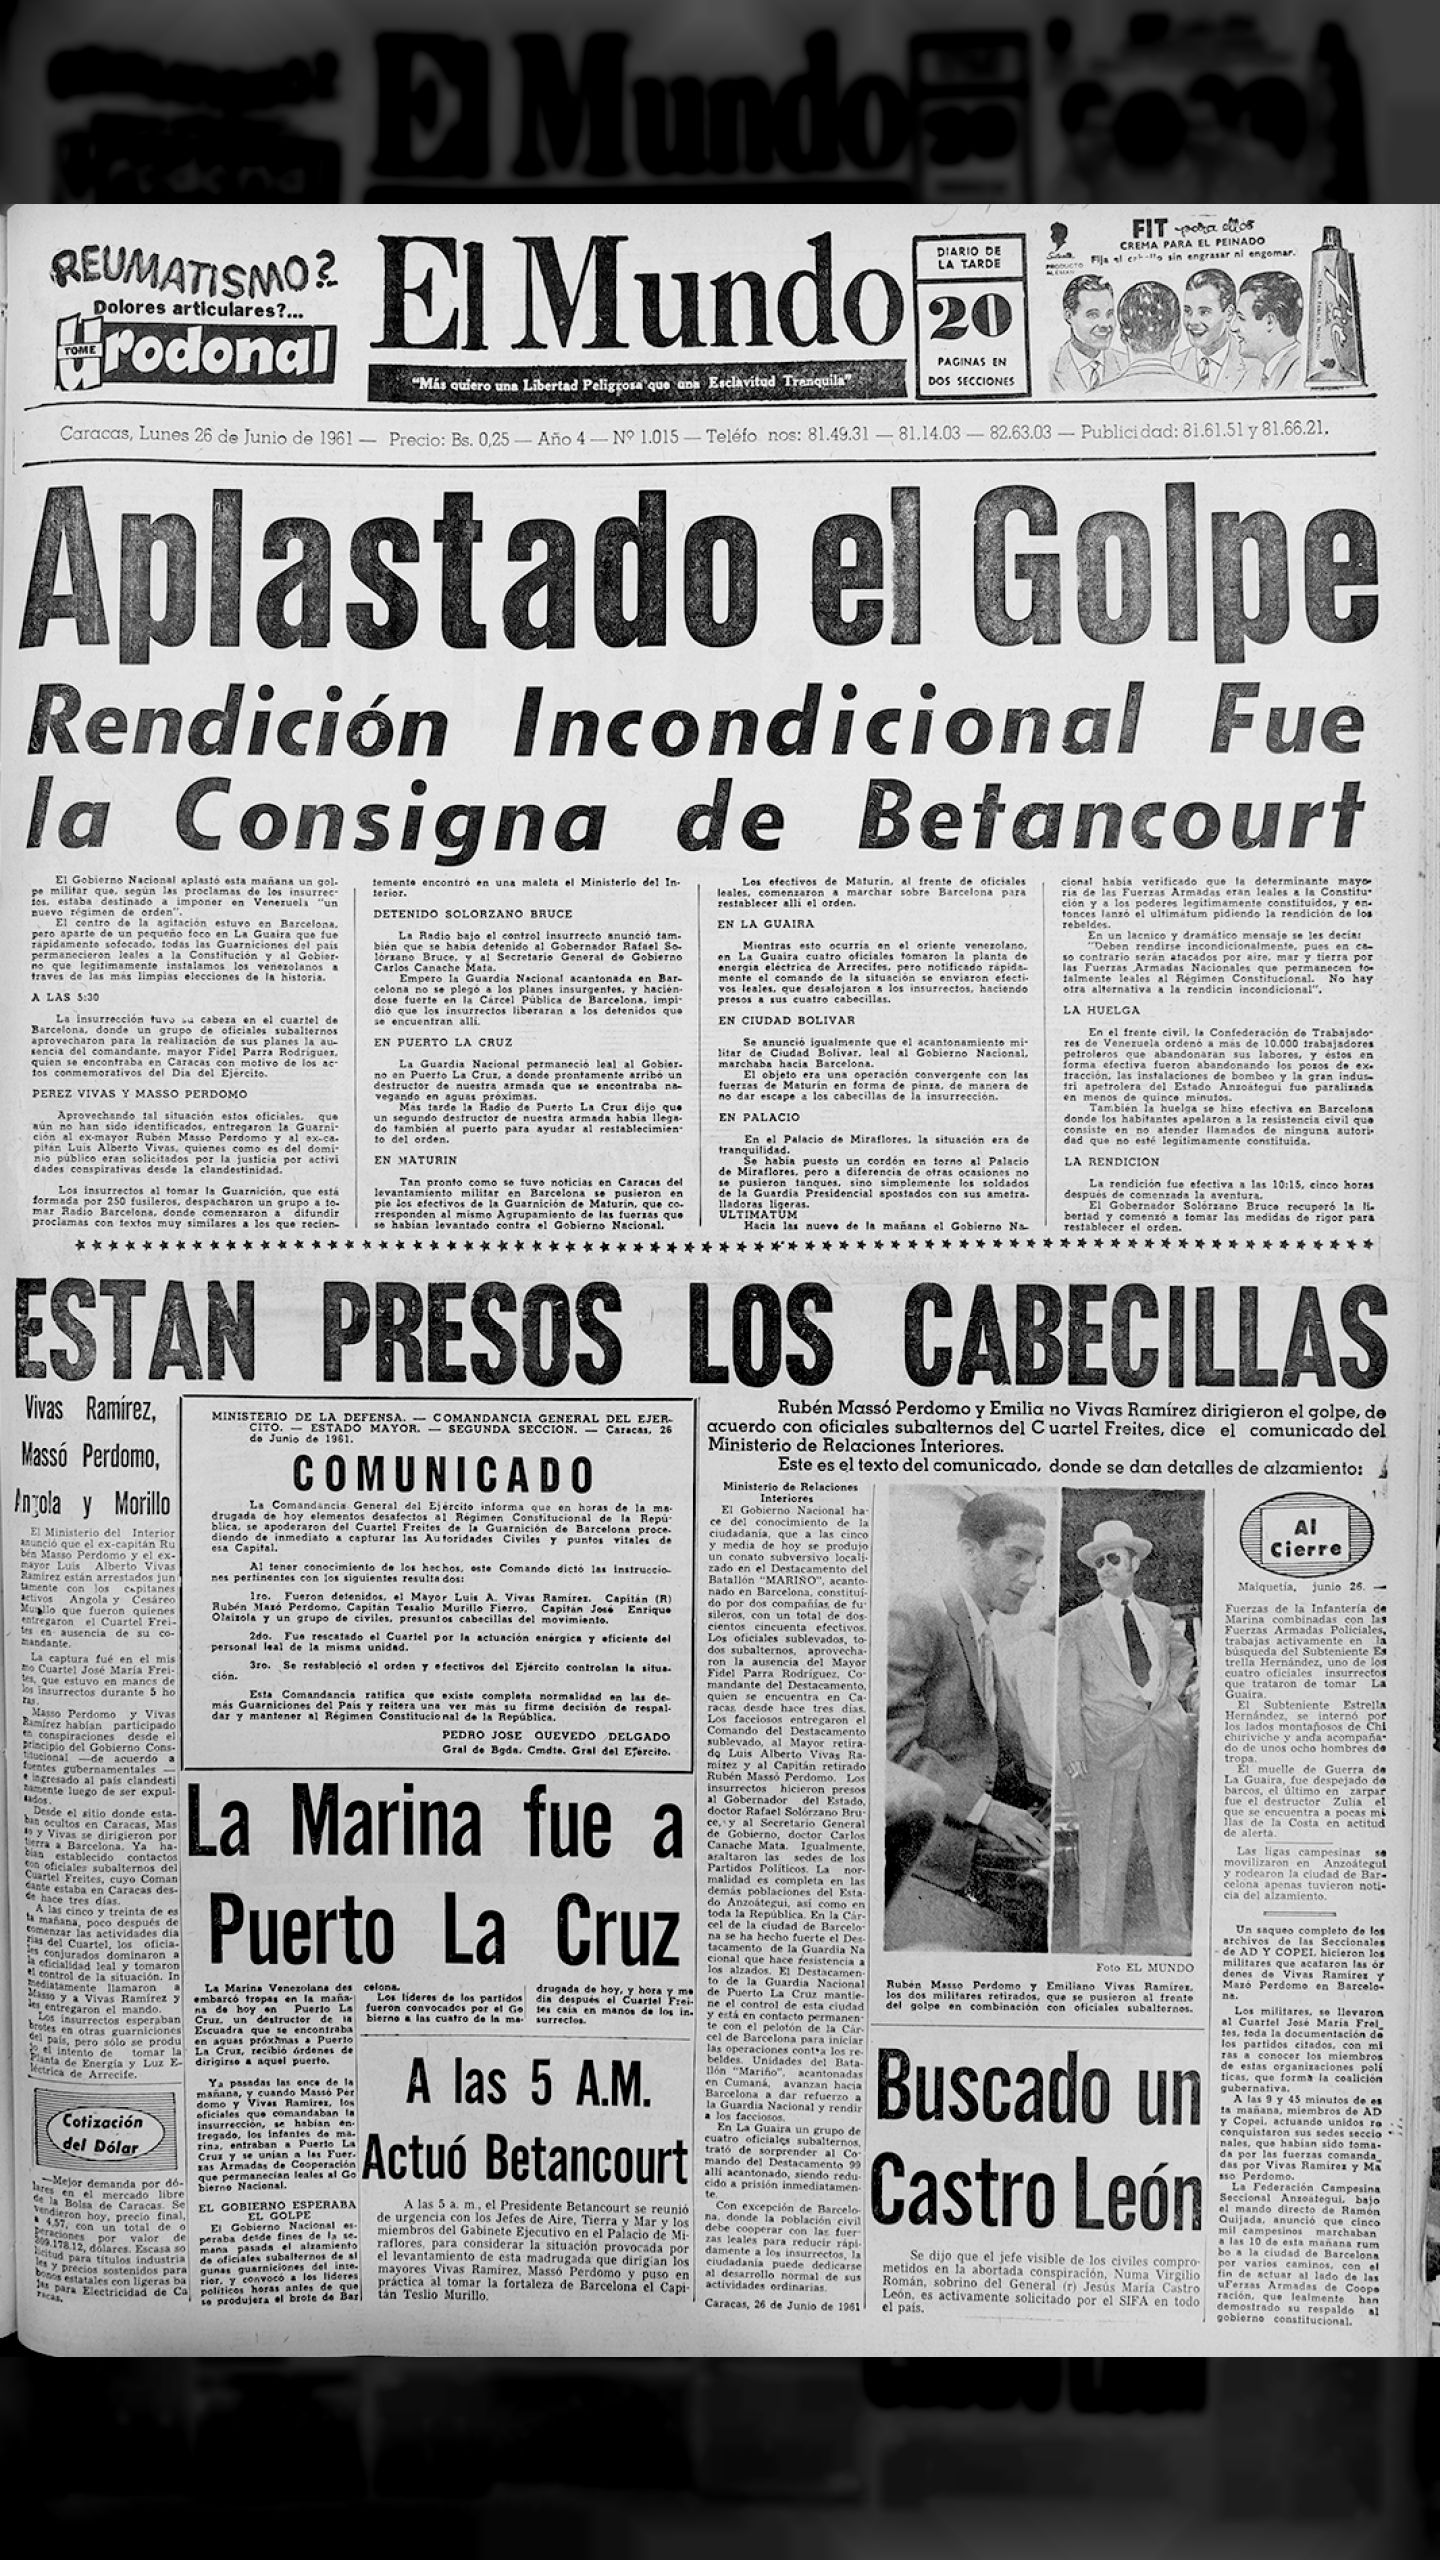 El Barcelonazo (El Mundo, 26 de junio 1961)